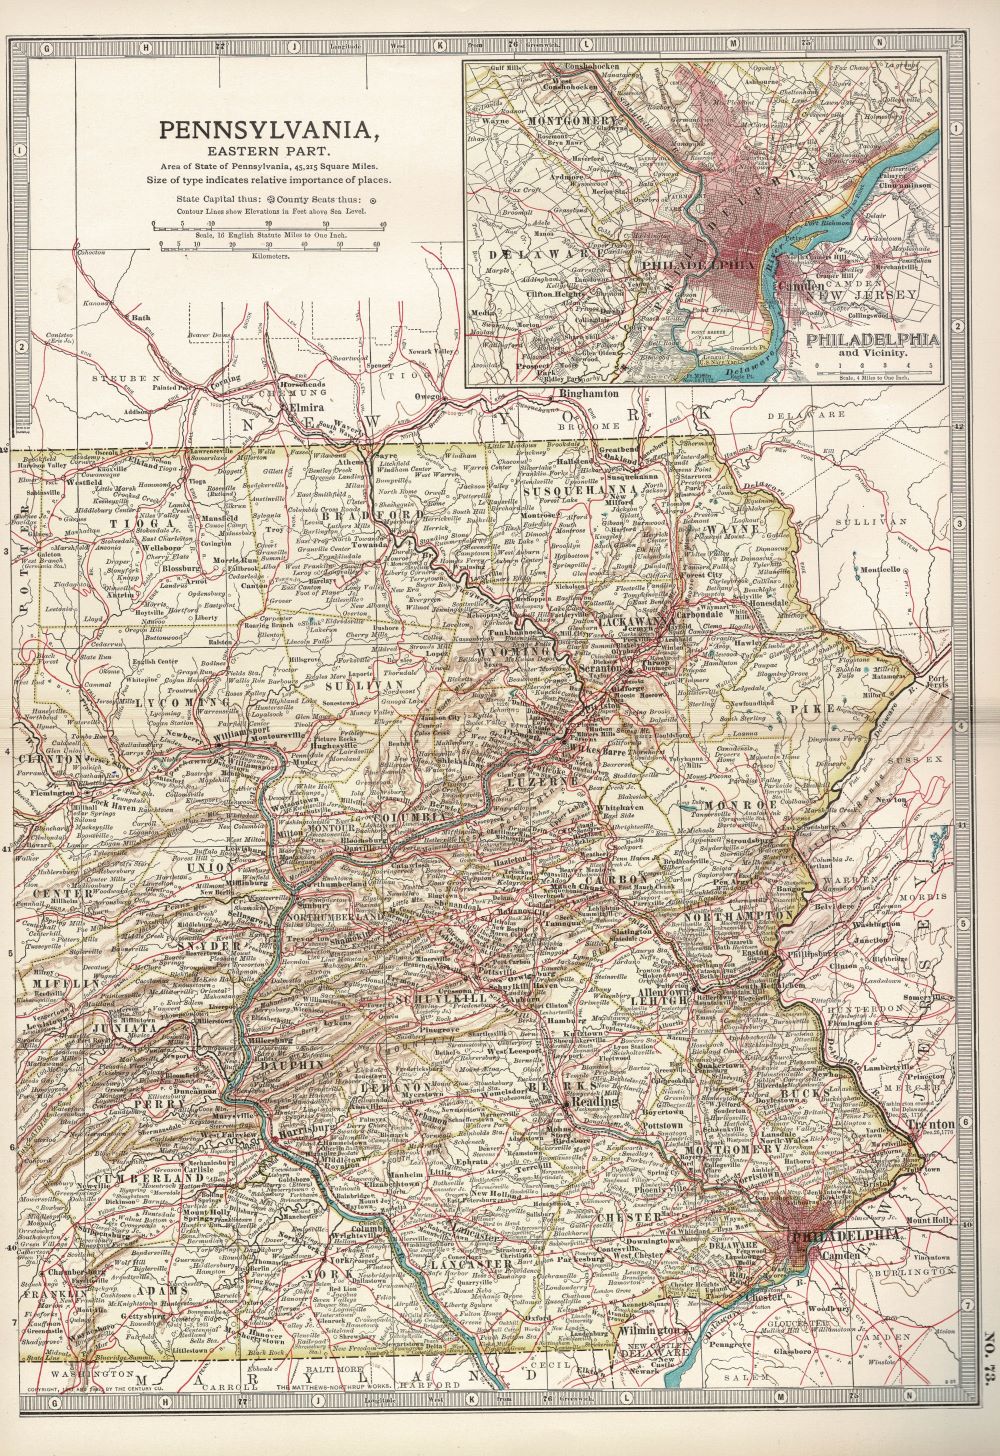 Pennsylvania, Eastern Part, No.73, Encyclopaedia Britannica 1903